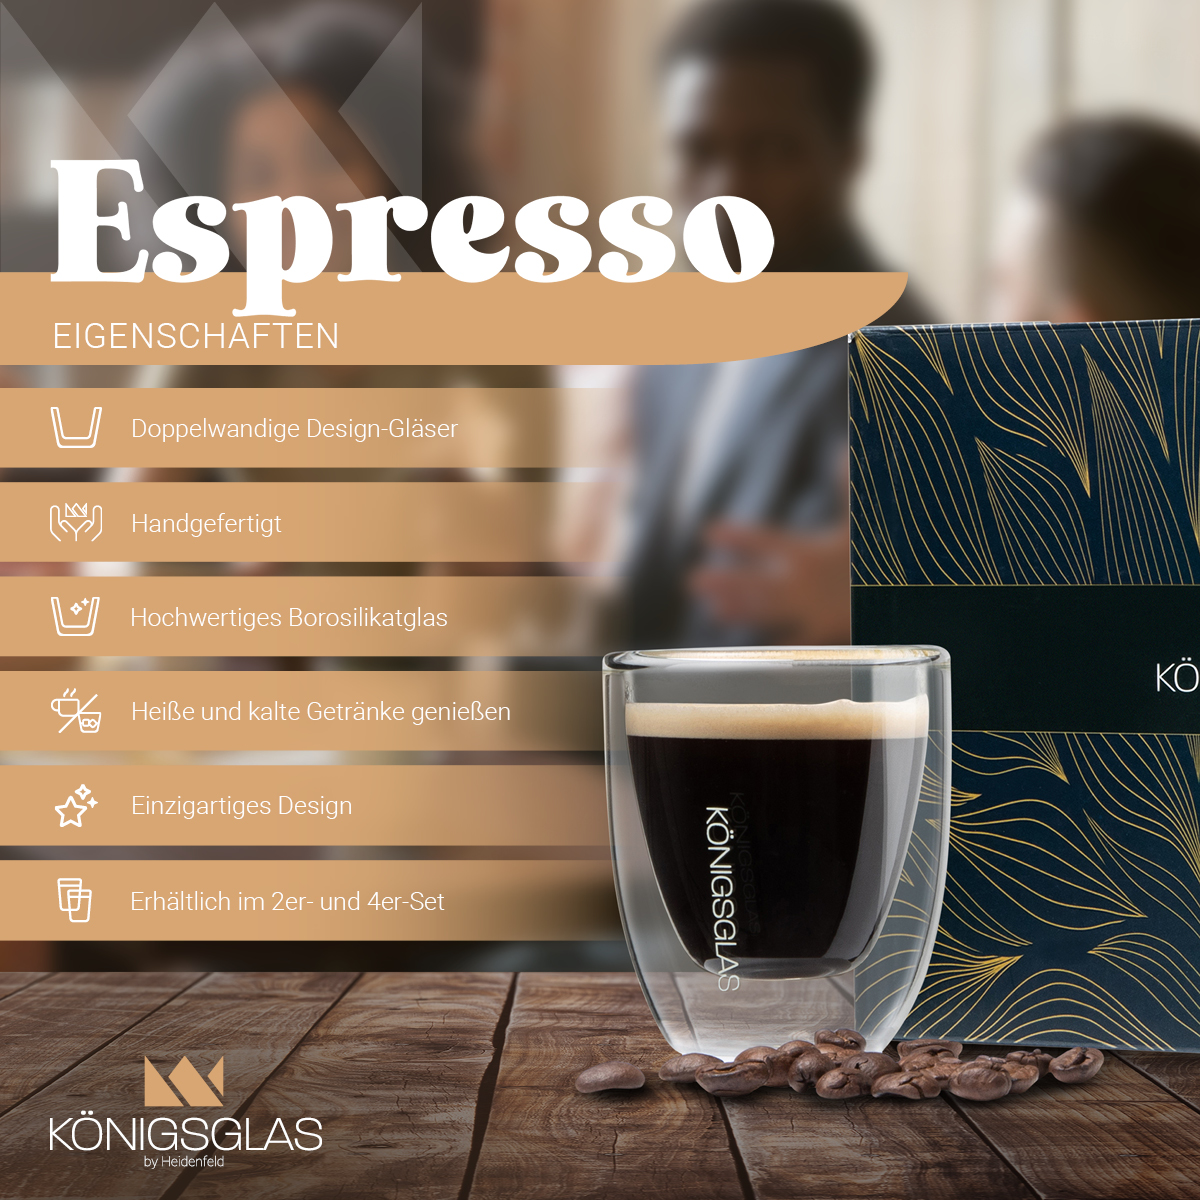 HEIDENFELD 2x Königsglas ml Kaffeegläser 80 Espresso